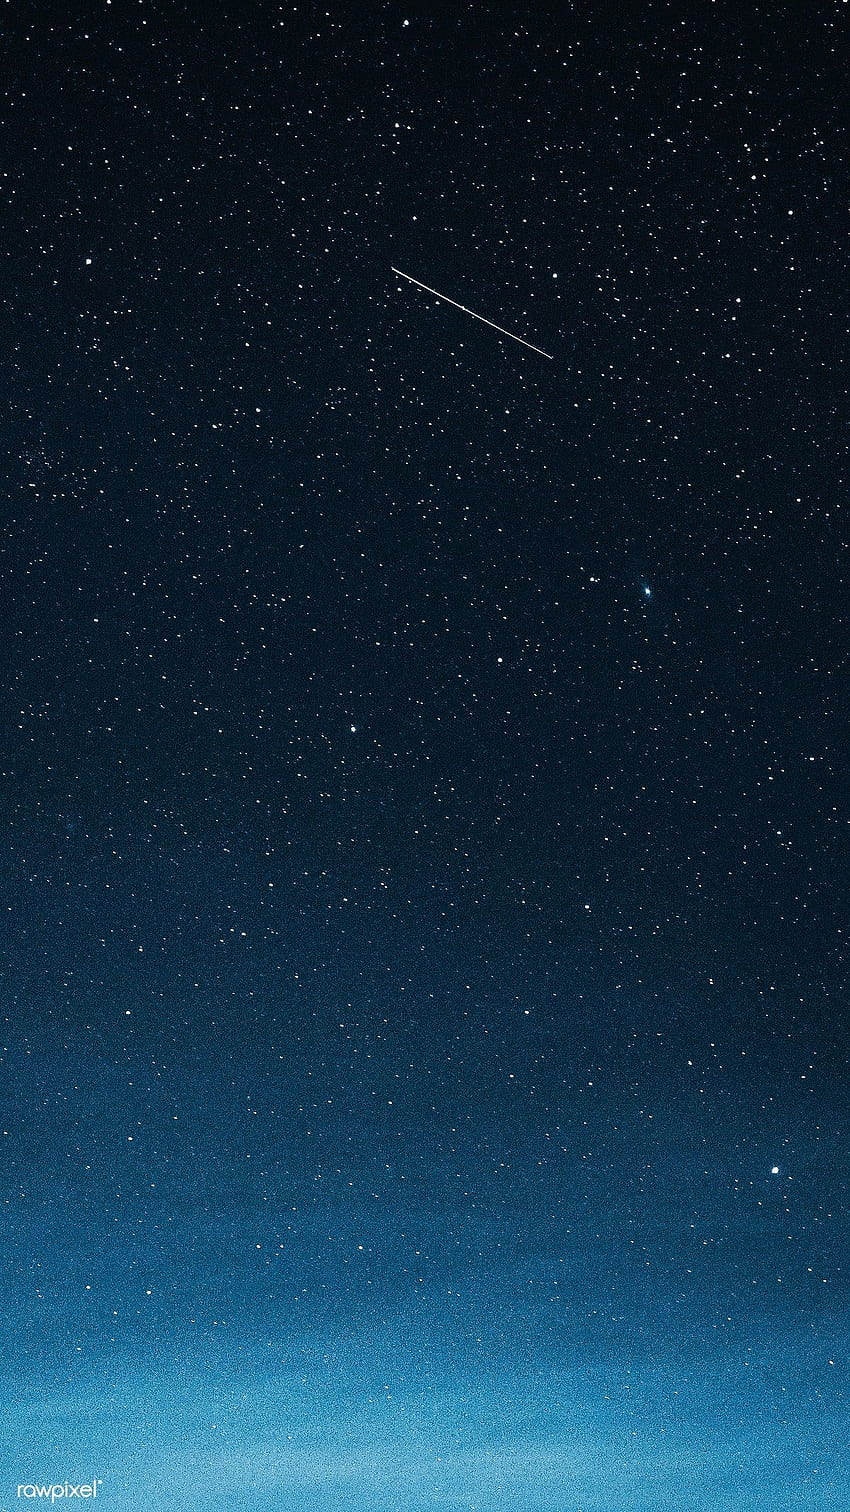 그린란드 상공의 어두운 푸른 하늘에 별똥별. / Luke Stackpool의 프리미엄. 진한 파란색, 푸른 하늘, 푸른 은하, 별이 있는 어두운 하늘 HD 전화 배경 화면